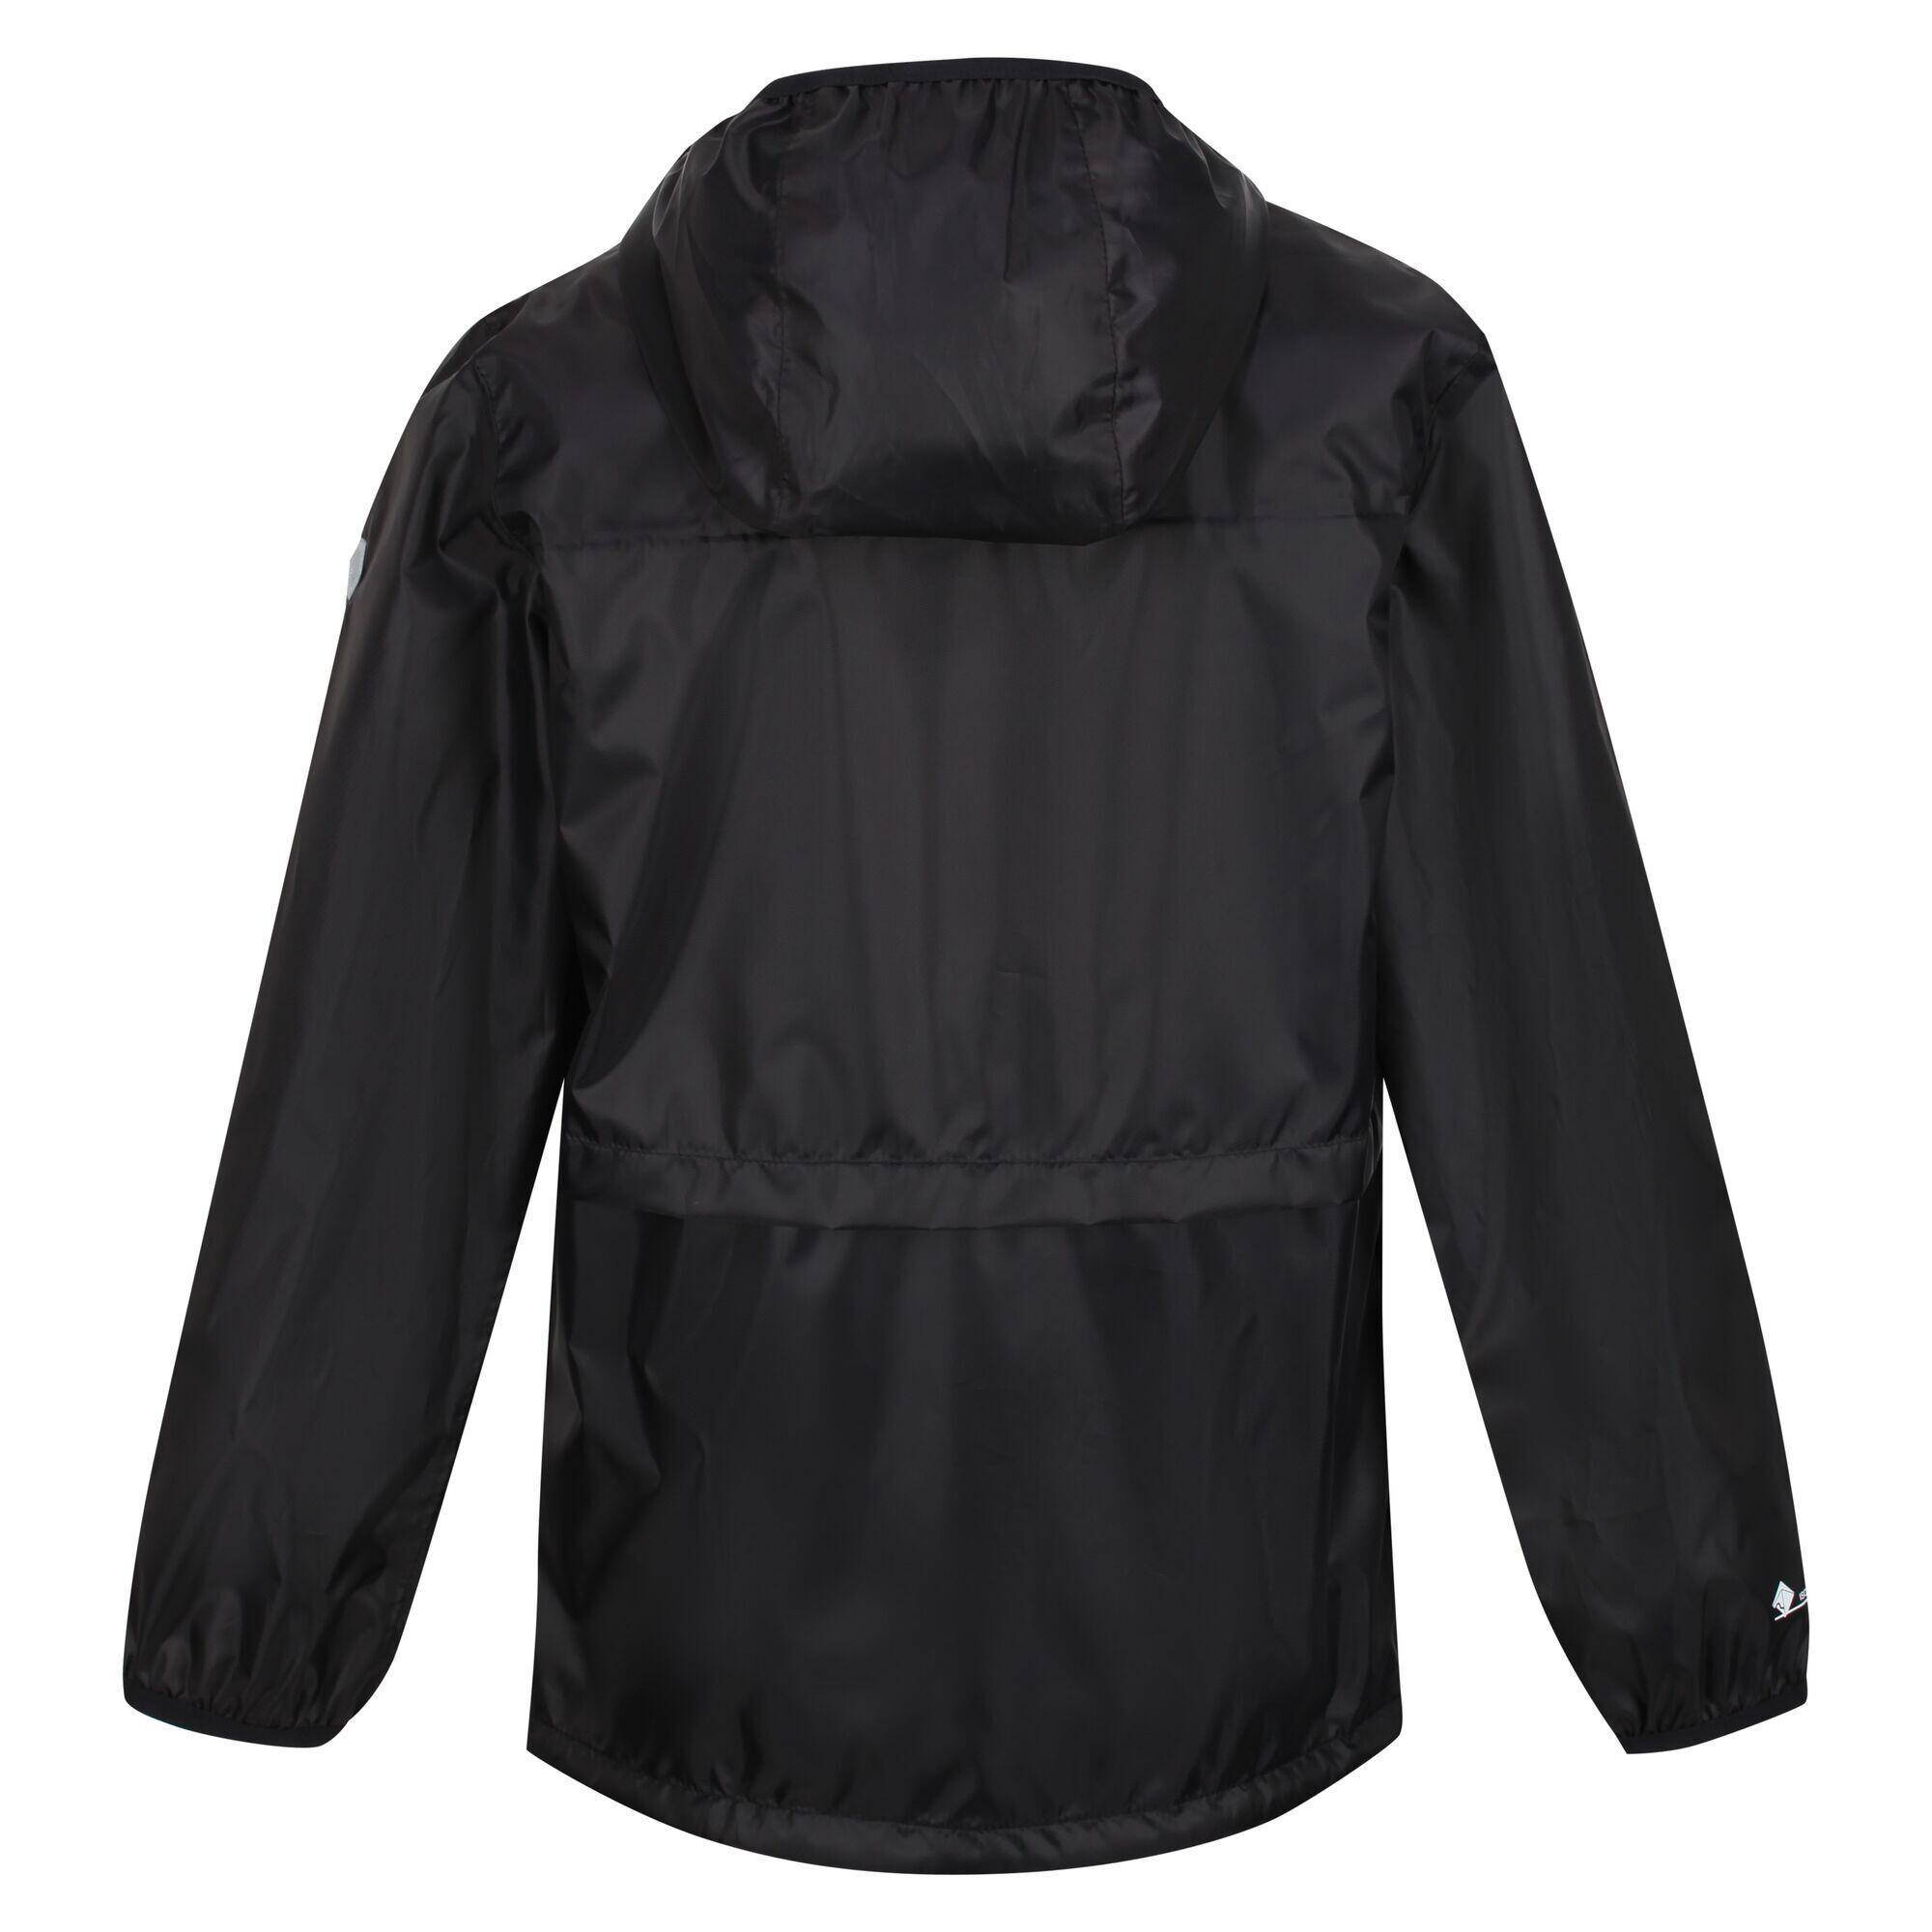 Childrens/Kids Bagley Packaway Waterproof Jacket (Black) REGATTA ...